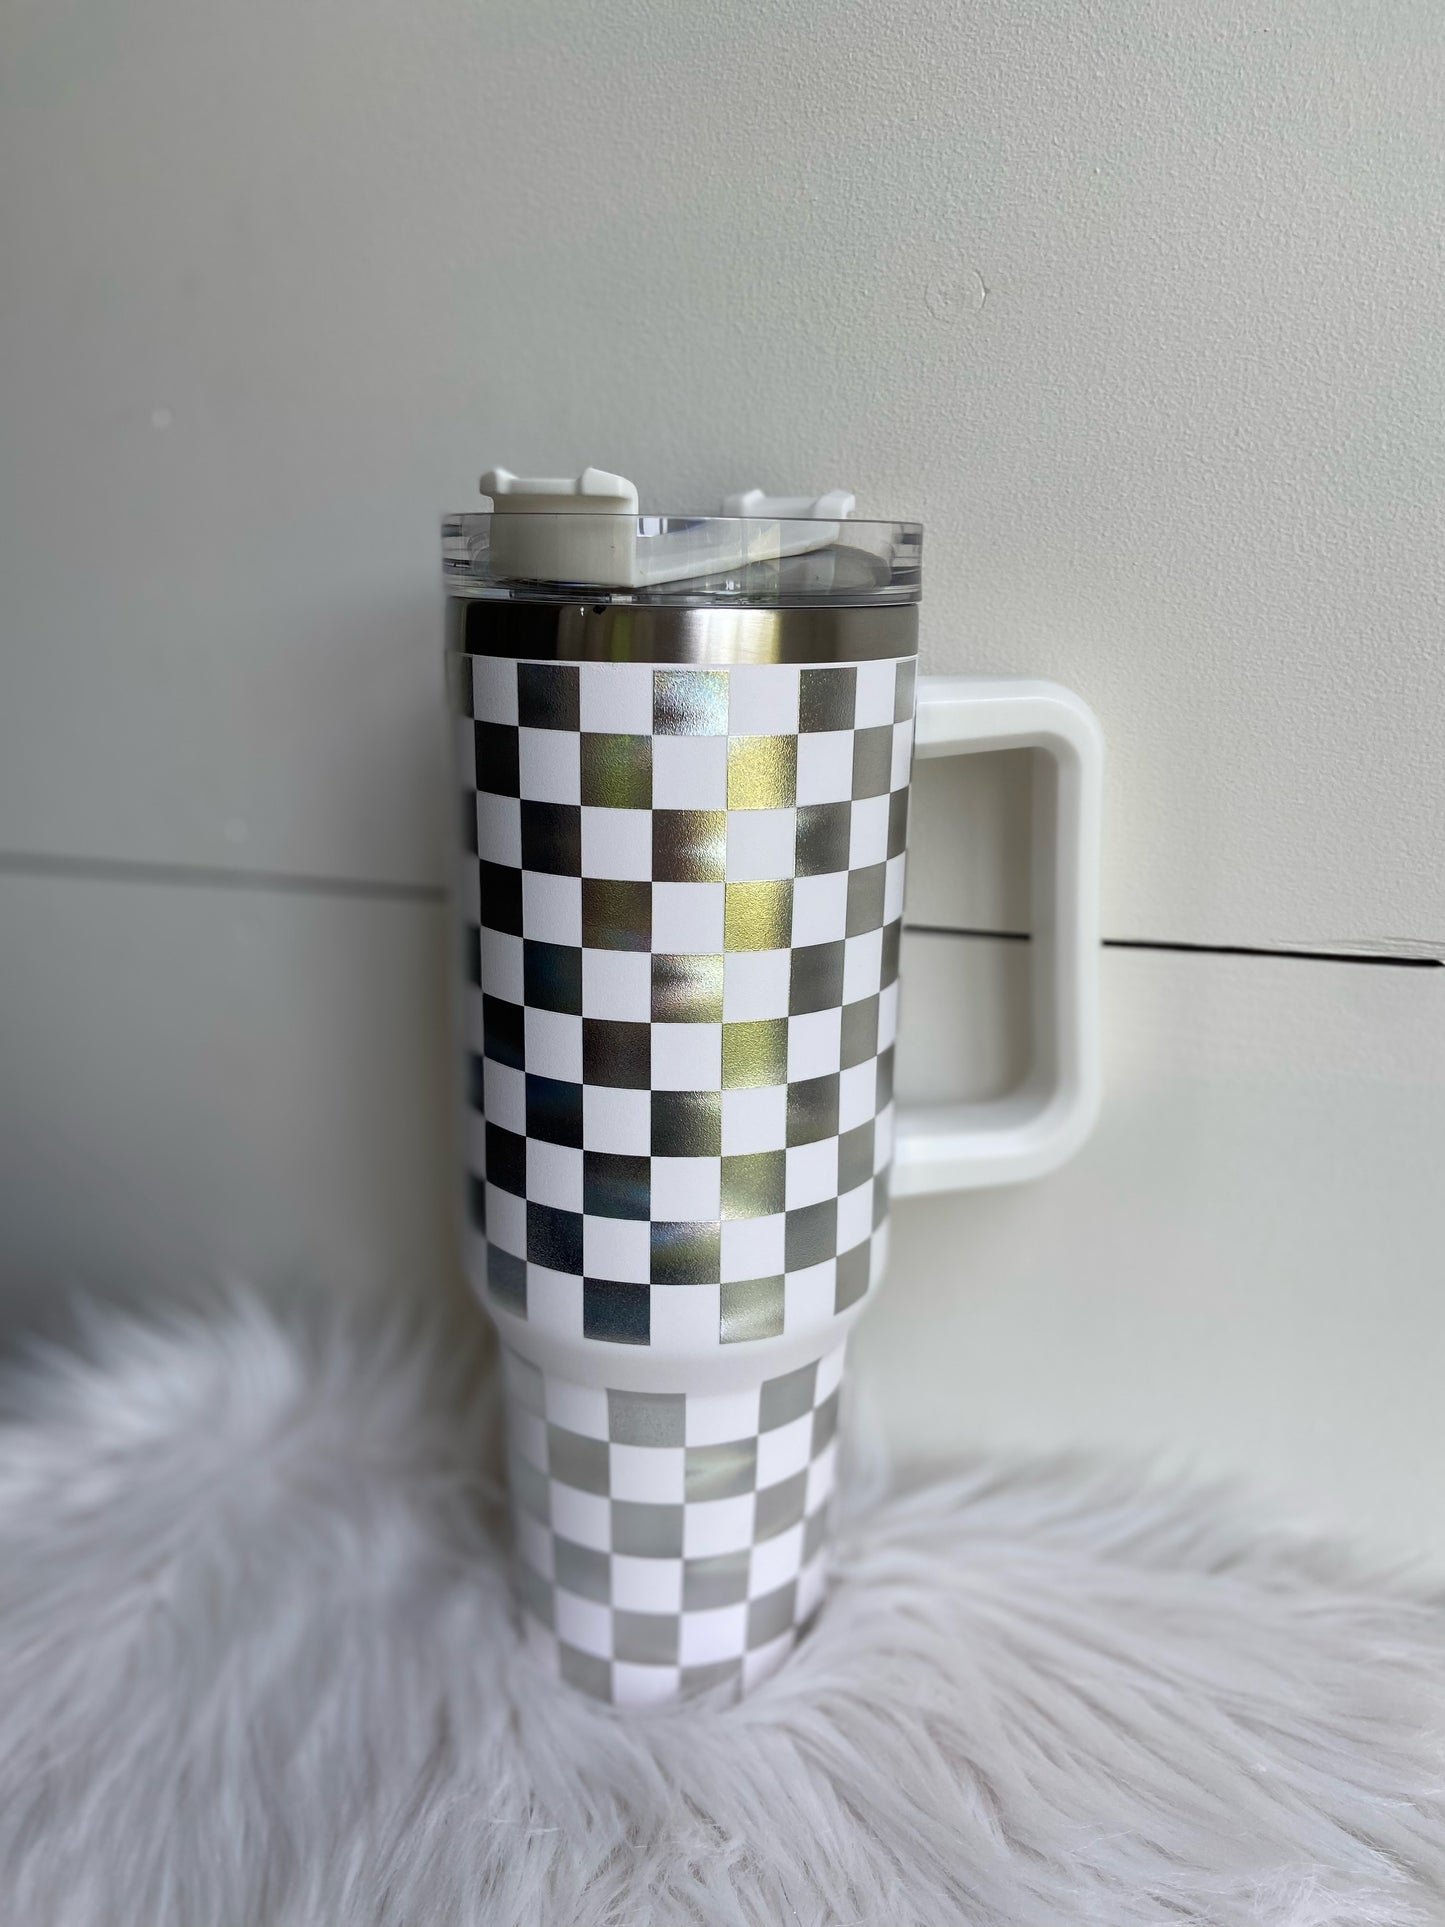 40oz Checkered Tumbler (White)